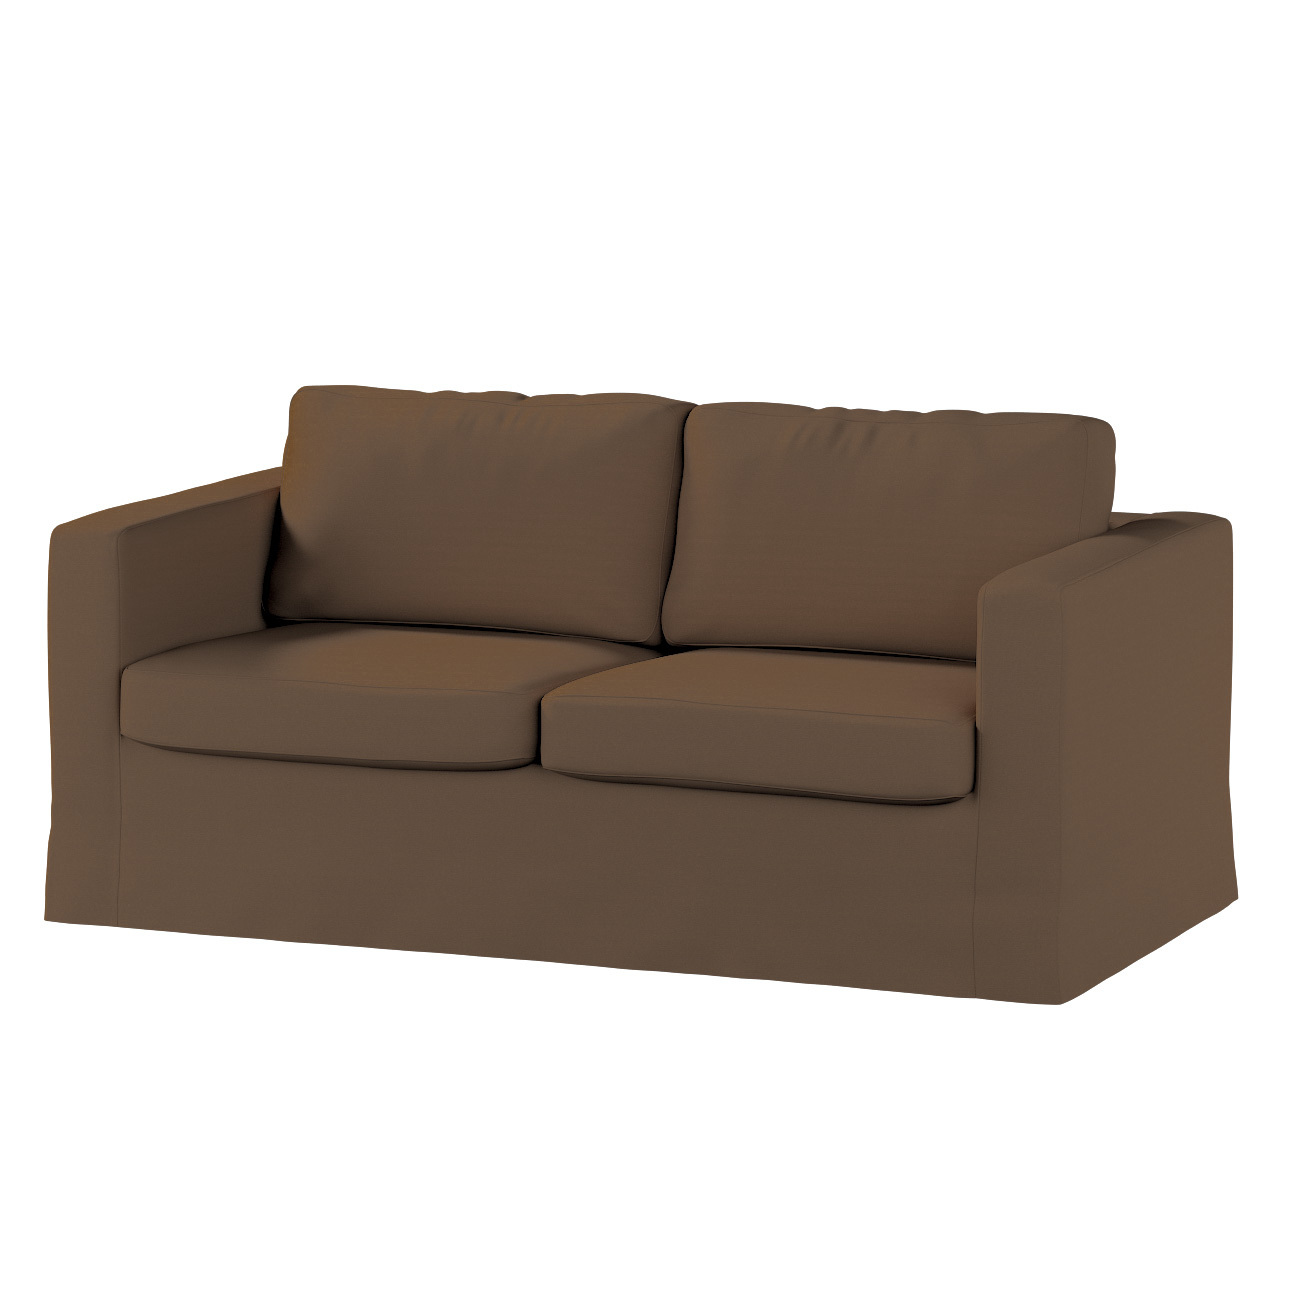 Bezug für Karlstad 2-Sitzer Sofa nicht ausklappbar, lang, mocca, Sofahusse, günstig online kaufen